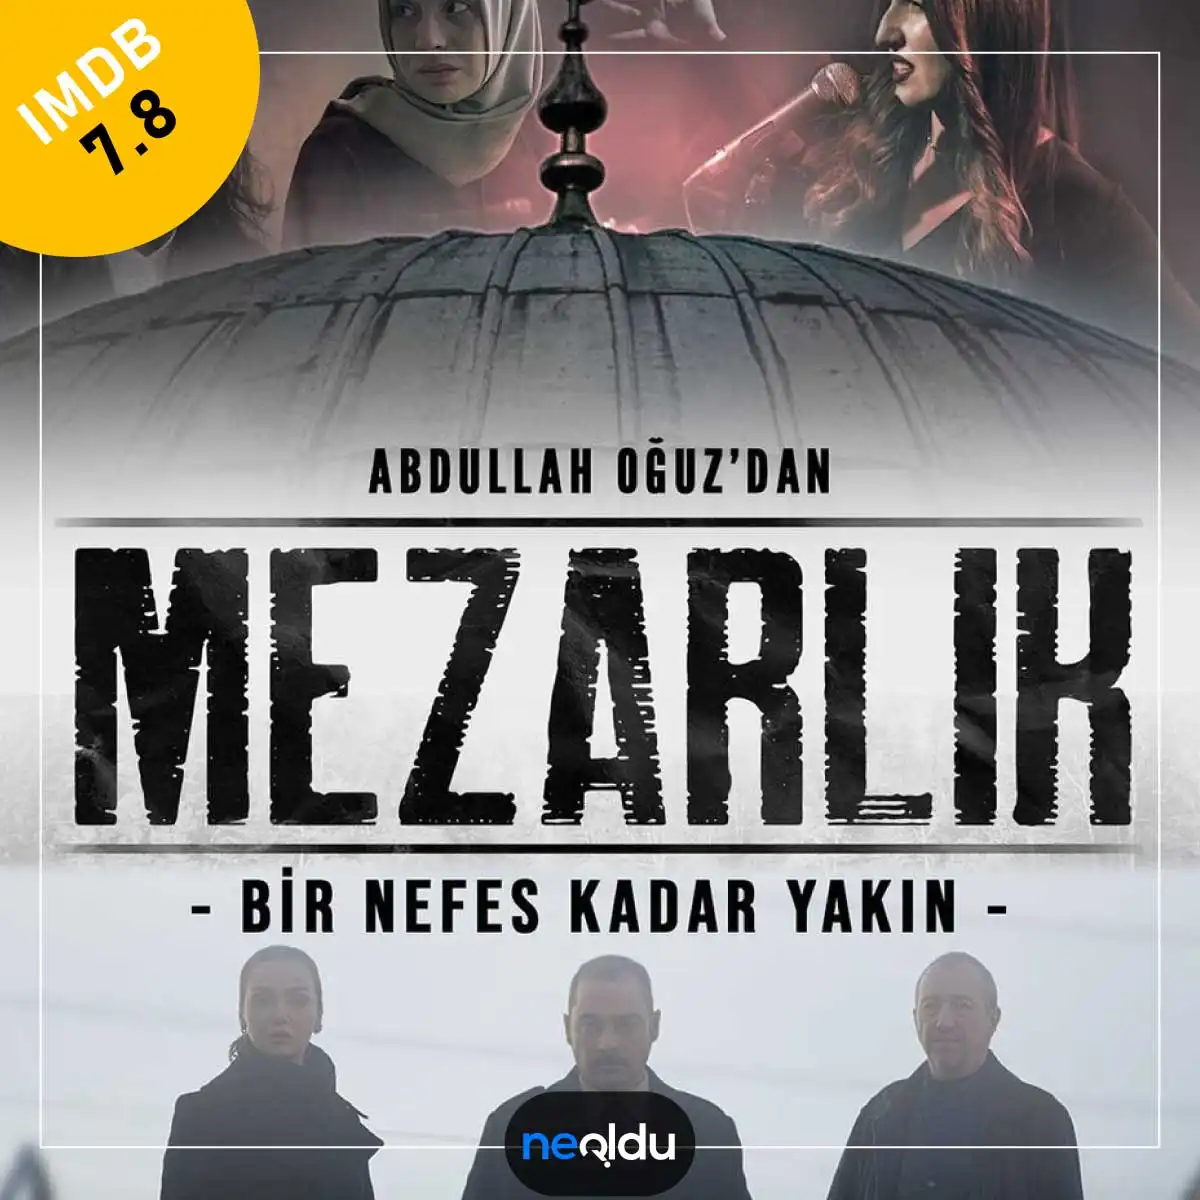 Netflix Türk Dizileri